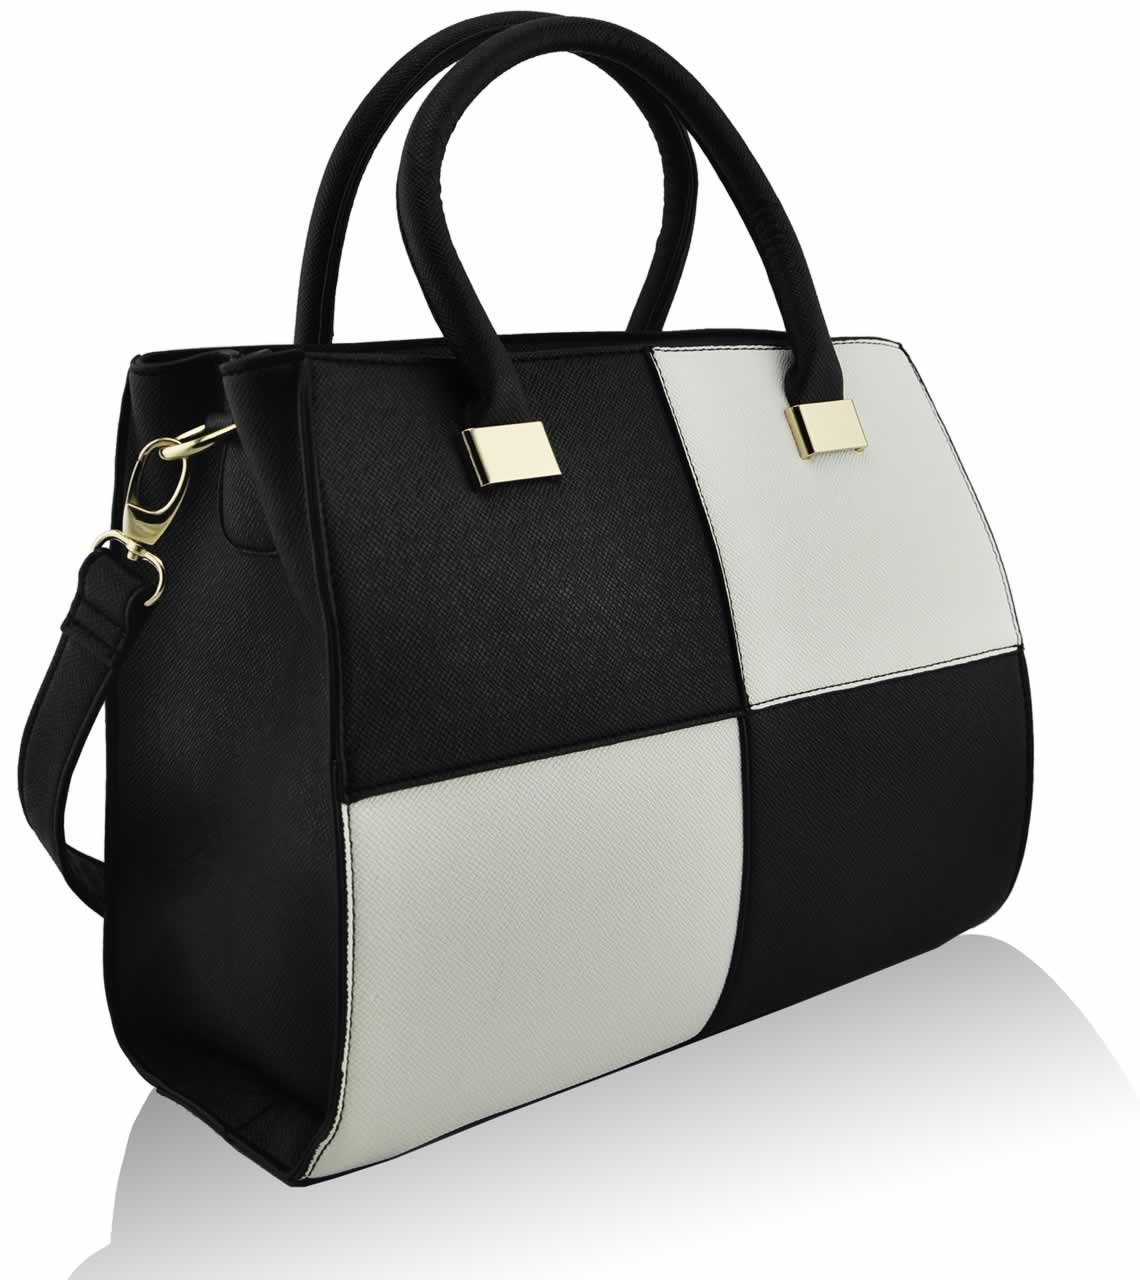 prada black and white handbag